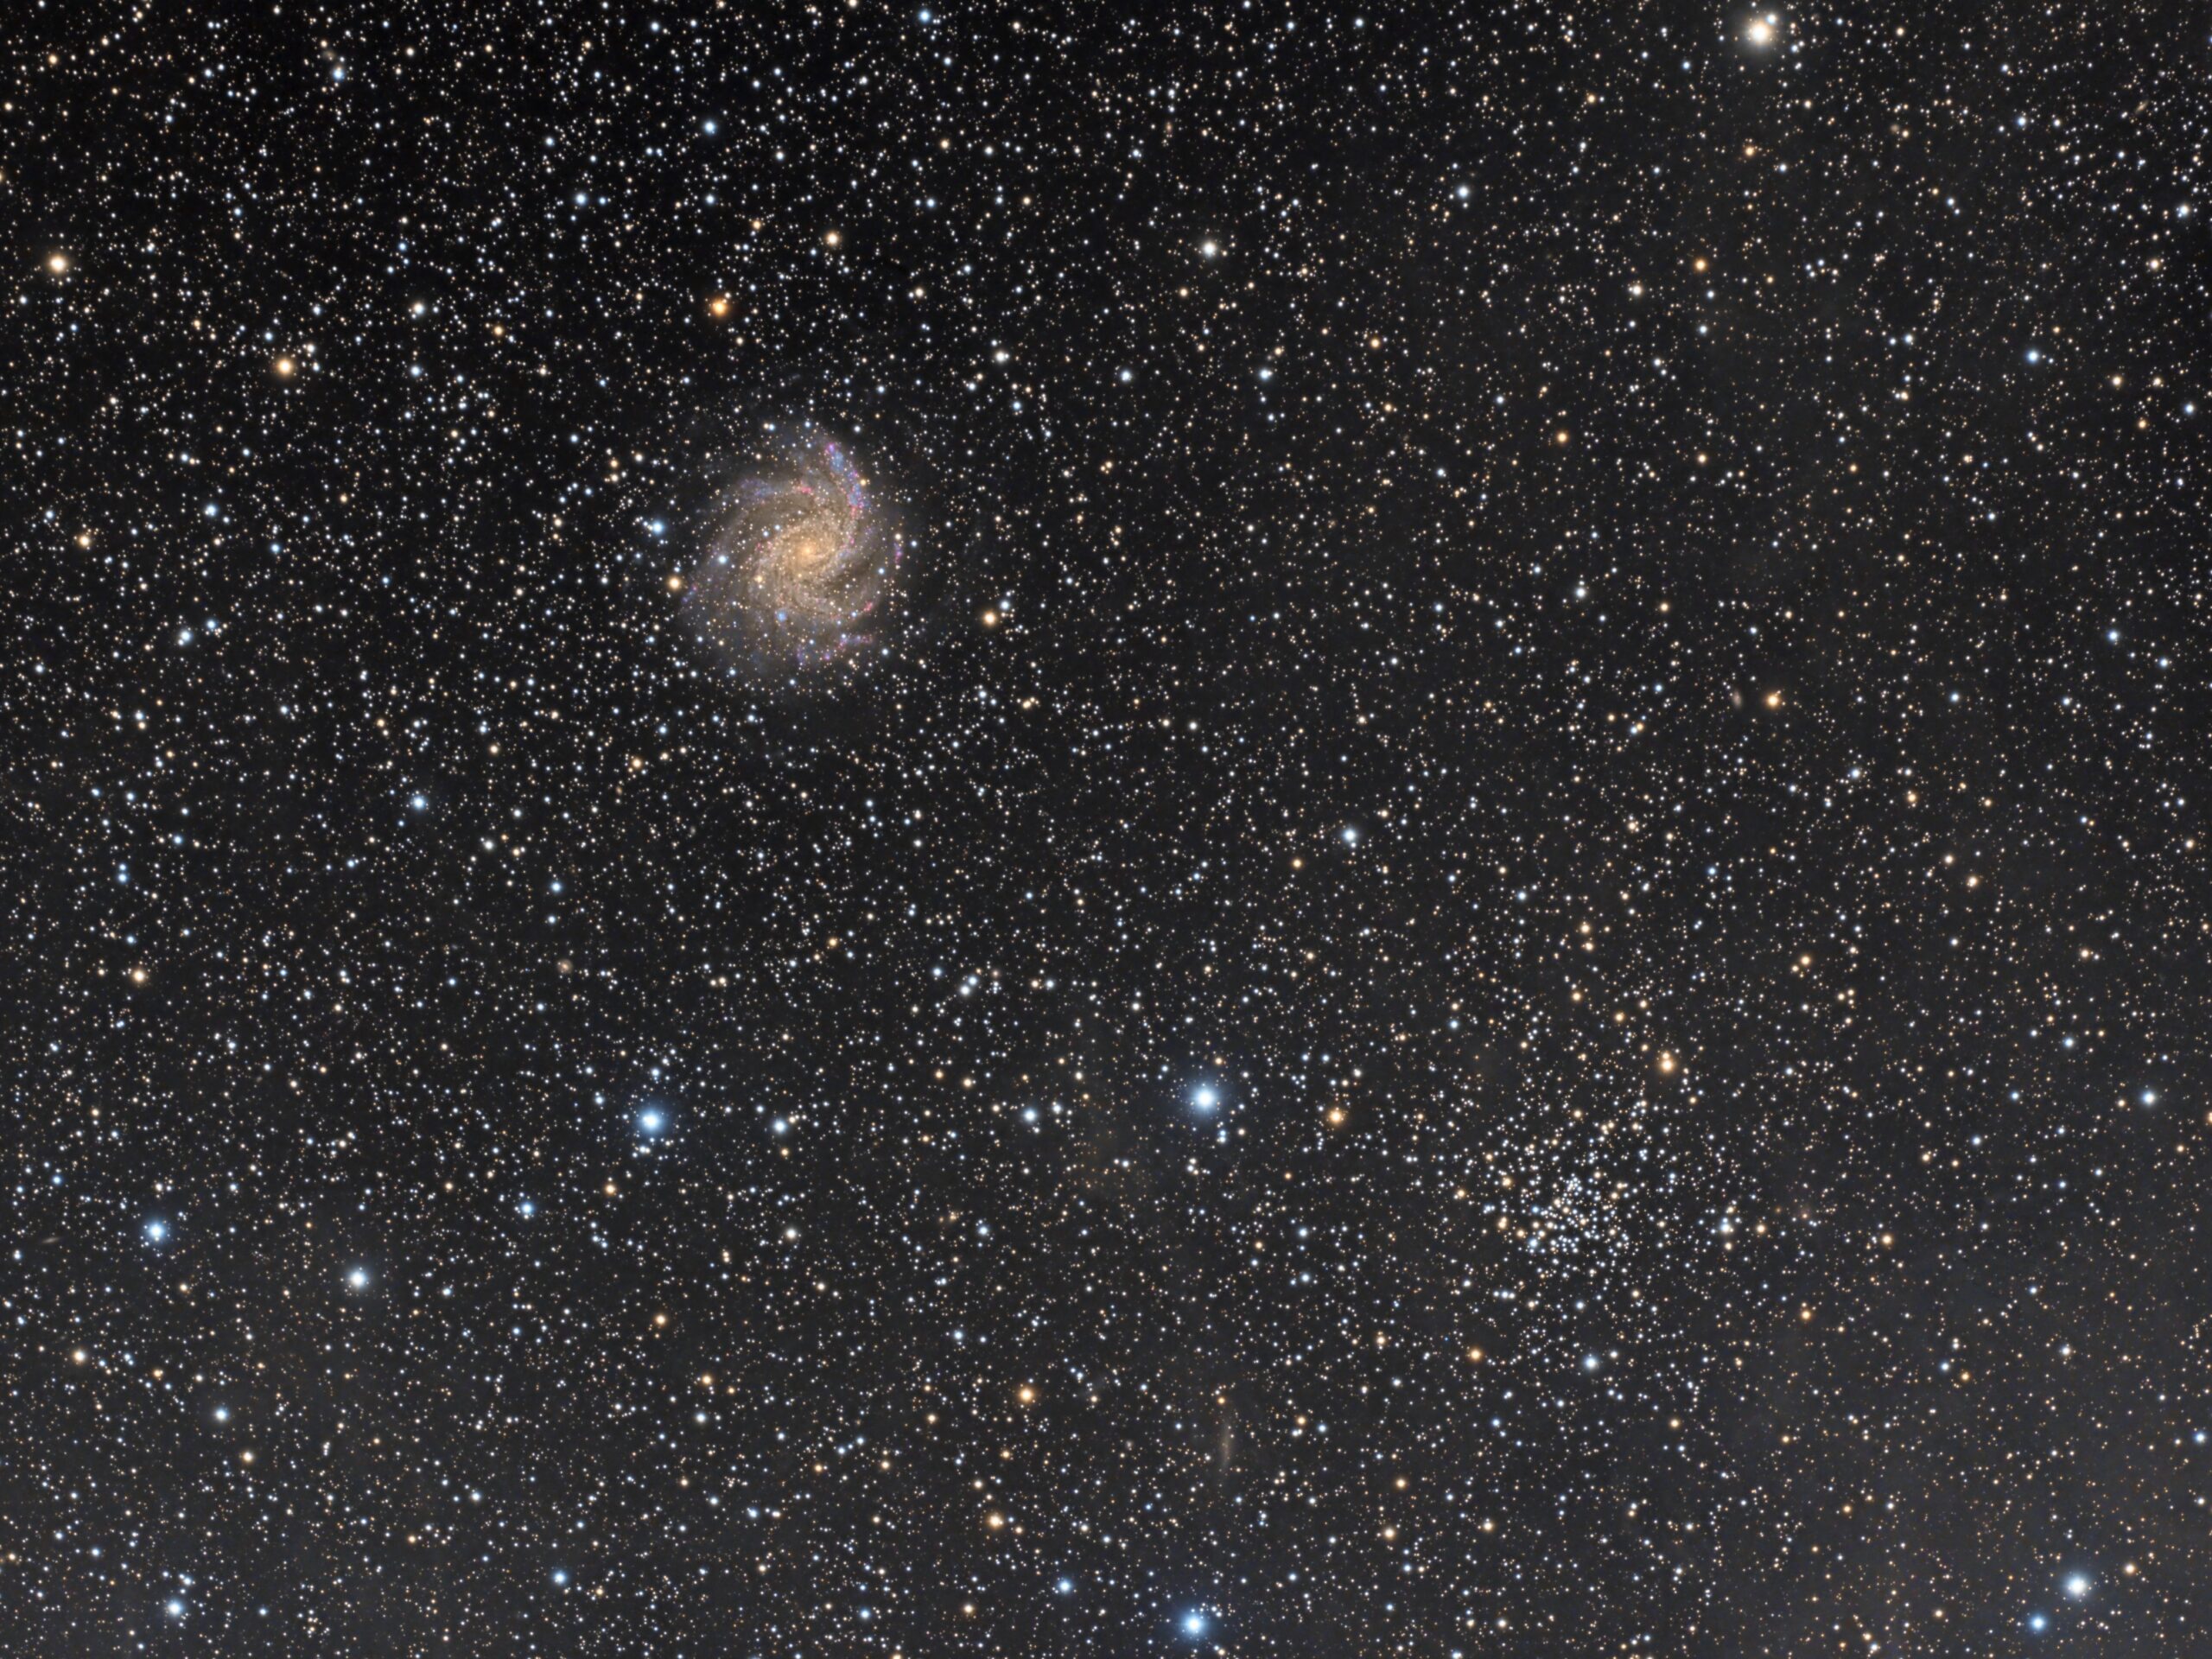 NGC 6946 and NGC 6939